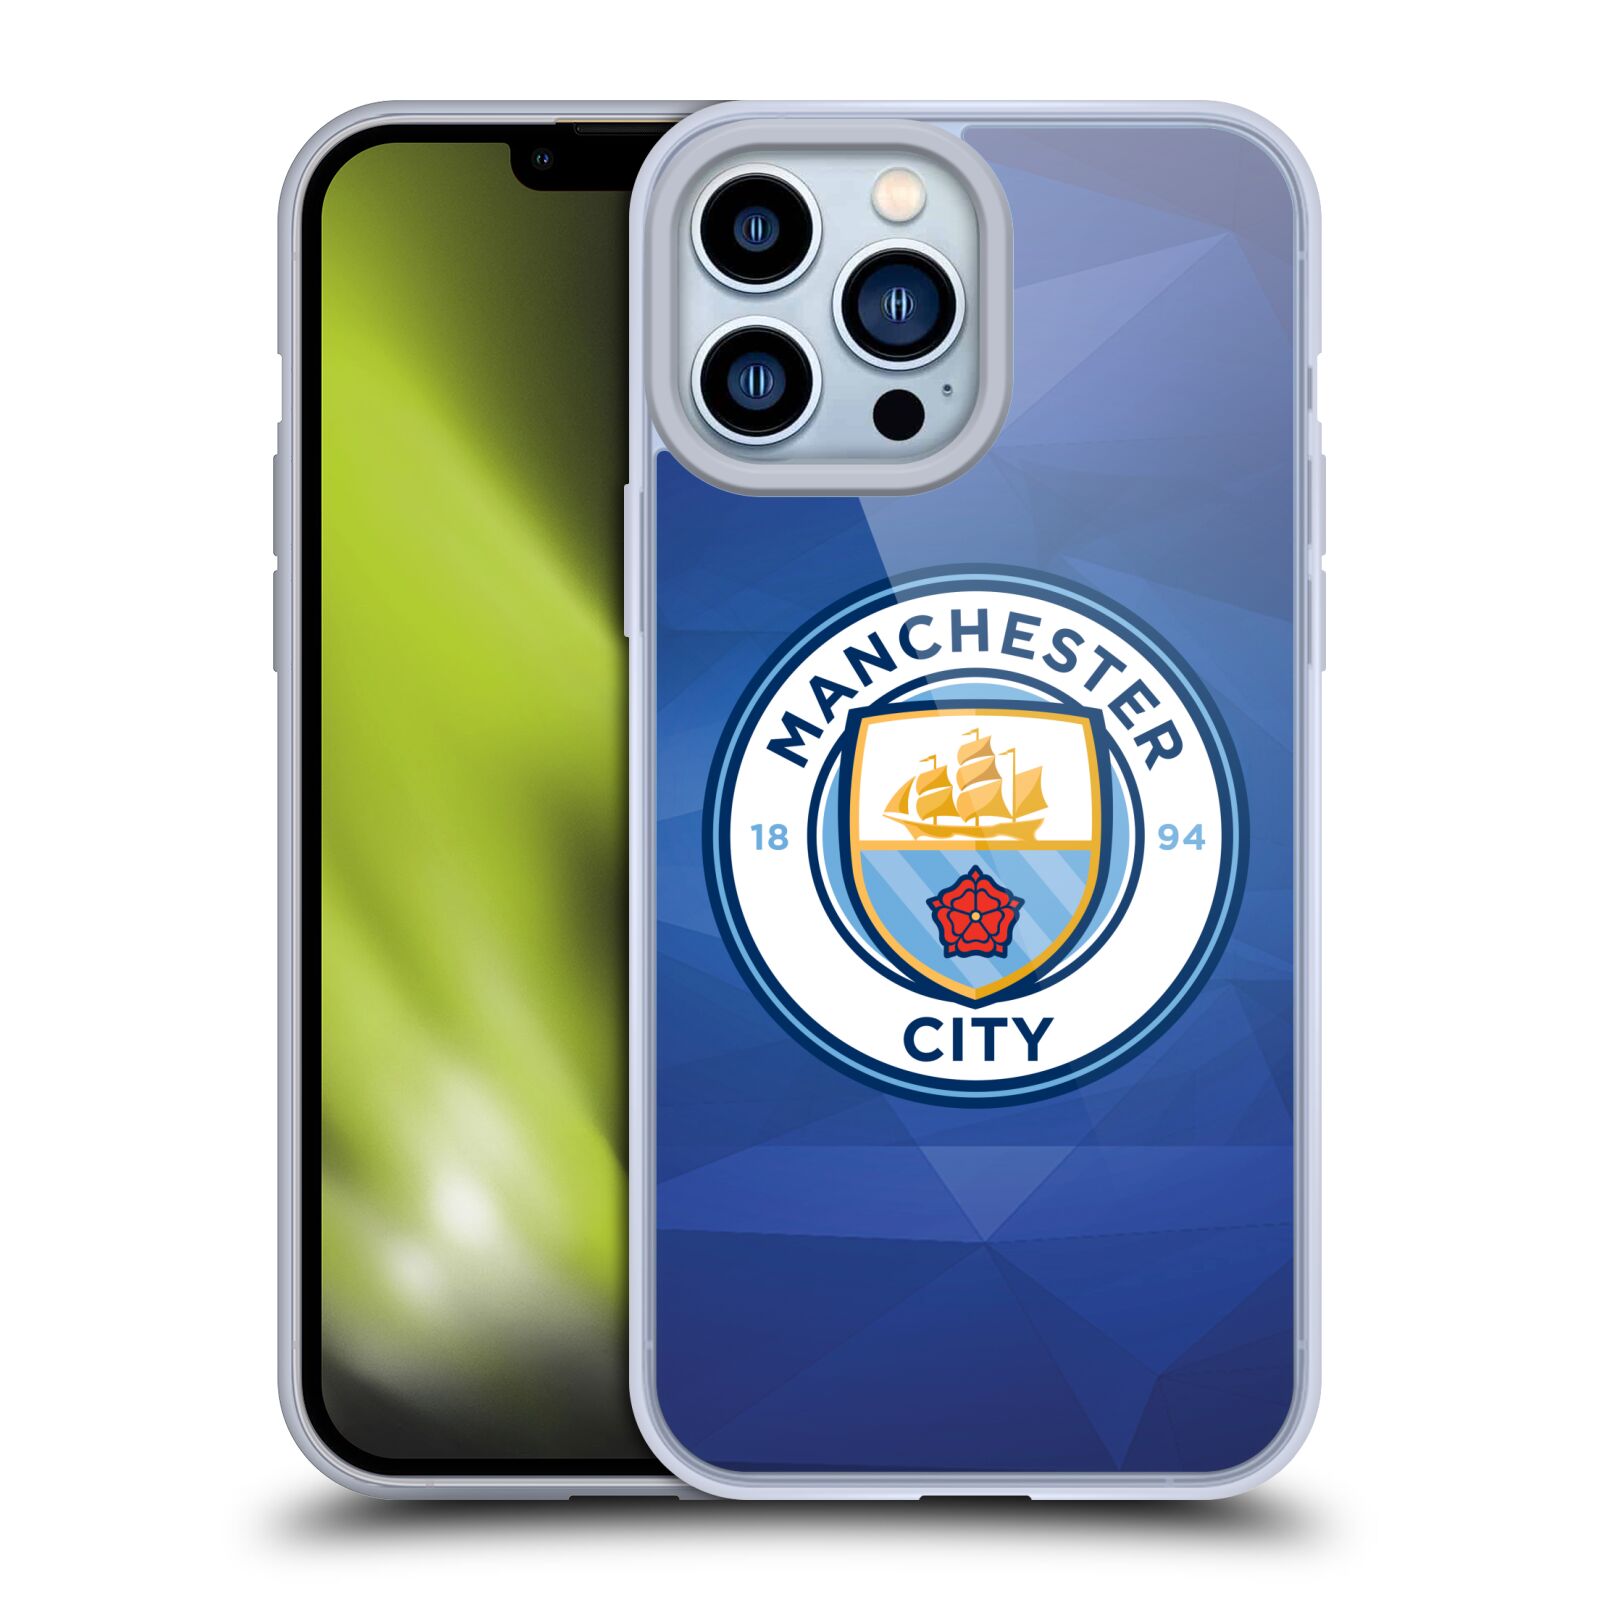 Silikonové pouzdro na mobil Apple iPhone 13 Pro Max - Head Case - Manchester City FC - Modré nové logo